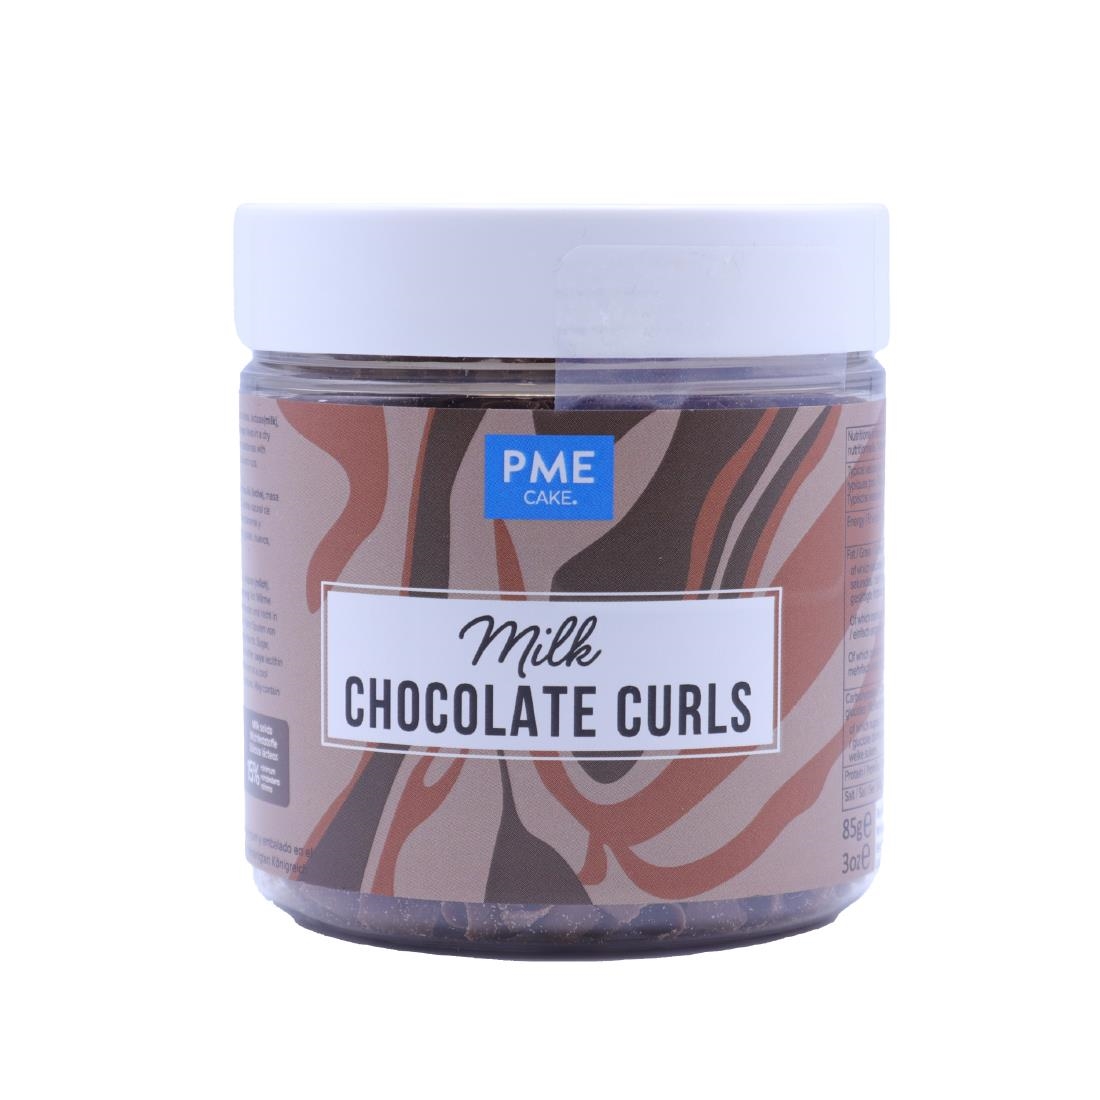 PME Chocolate Curls Milk Chocolate 85g (HU282)